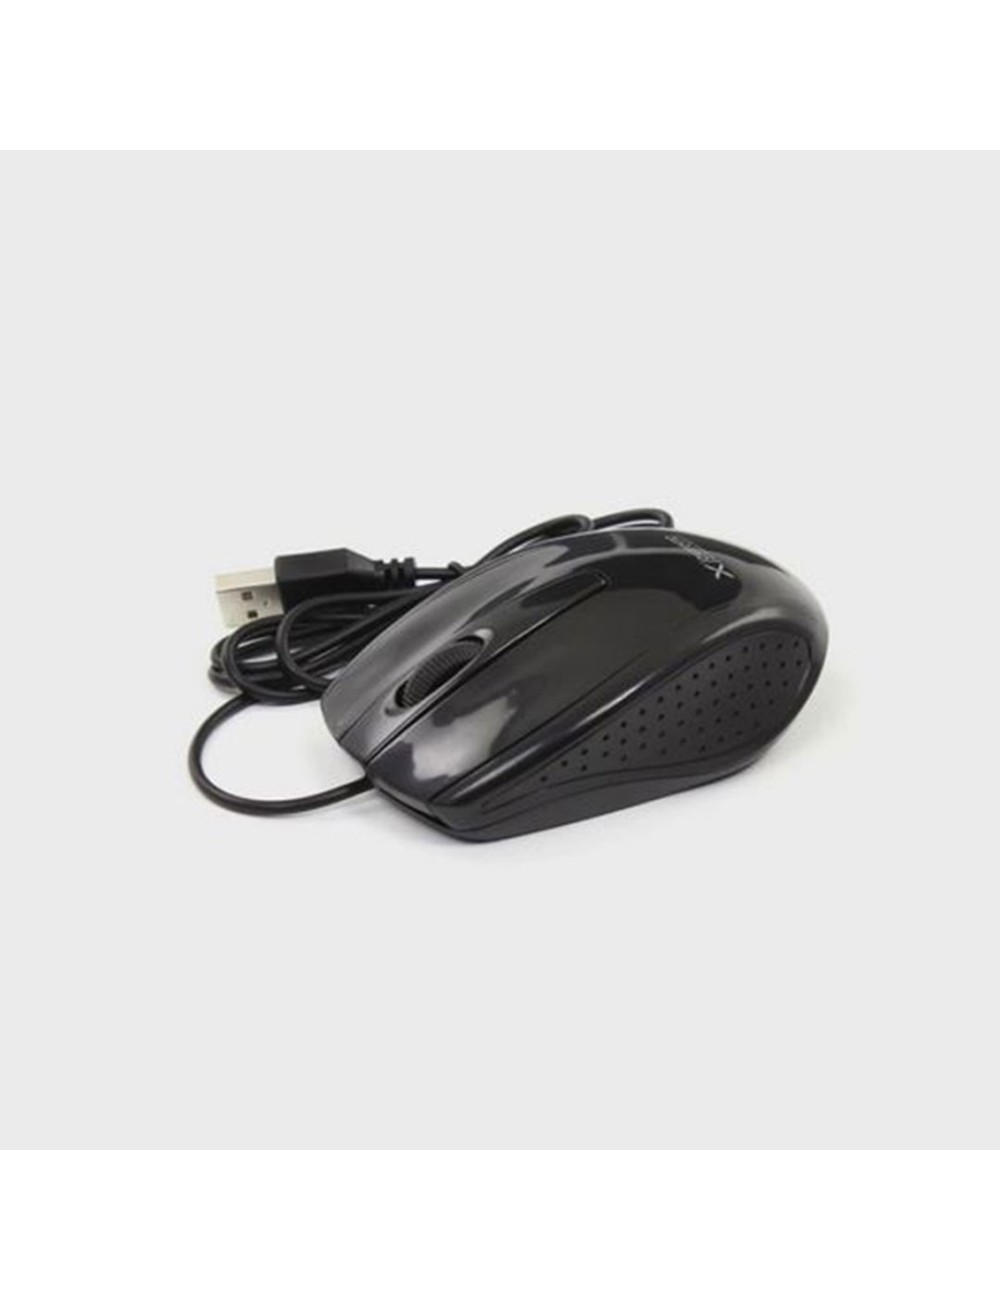 Mouse ottico USB Extreme XM110K Bungee 1000 dpi nero